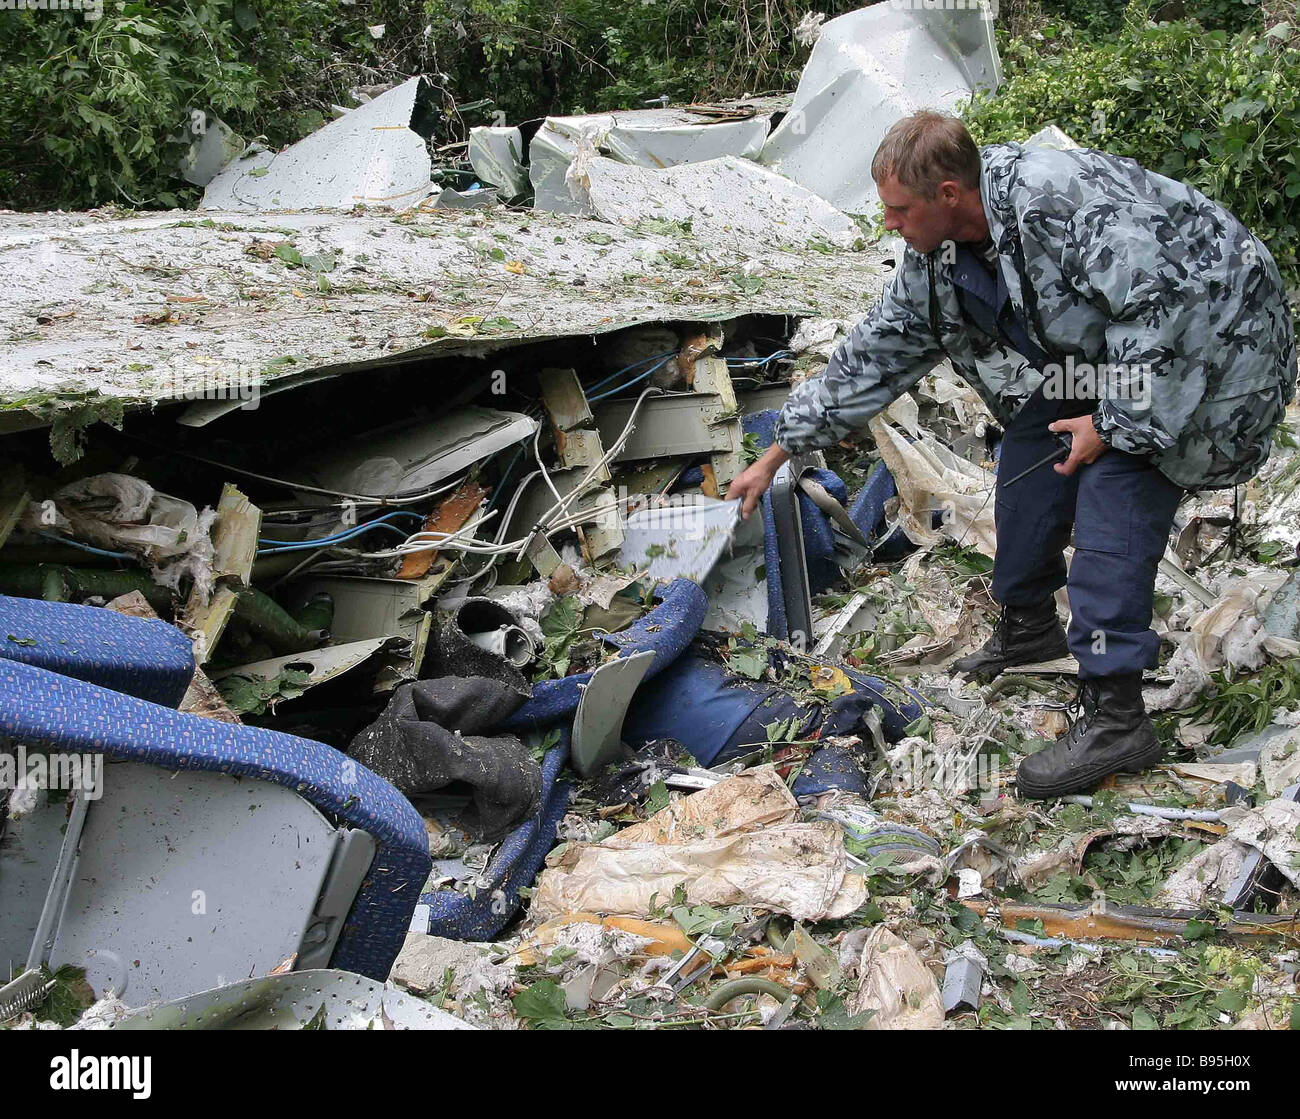 31 августа 24. Катастрофа ту-134 в Иванове. Катастрофа ту-154 над Боденским озером. 24 Августа 2004 авиакатастрофа.